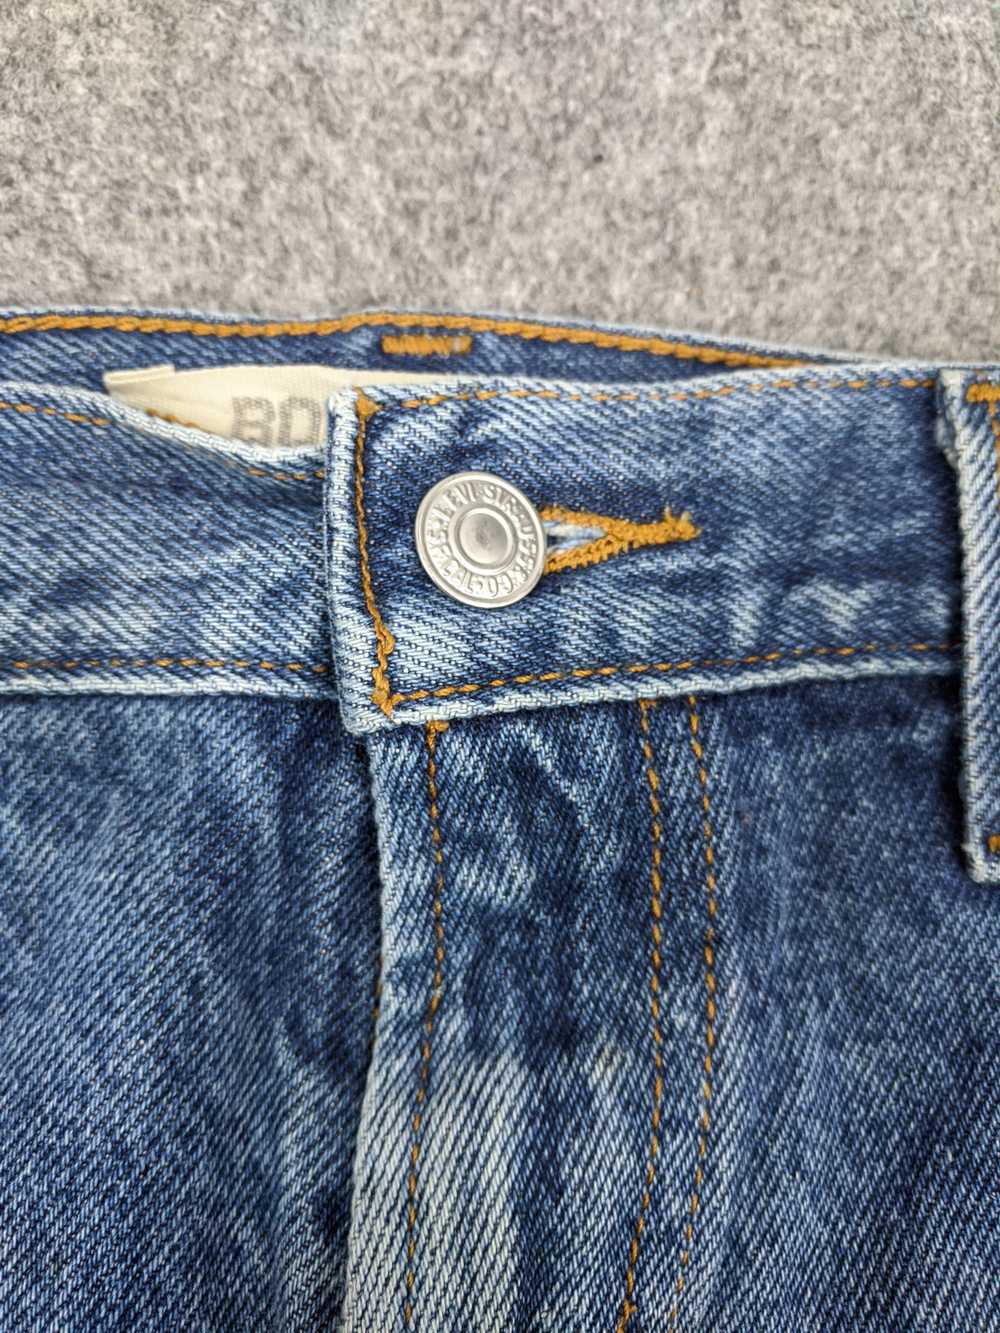 Vintage - Vintage Levis 517 Flared Bootcut Jeans - image 5